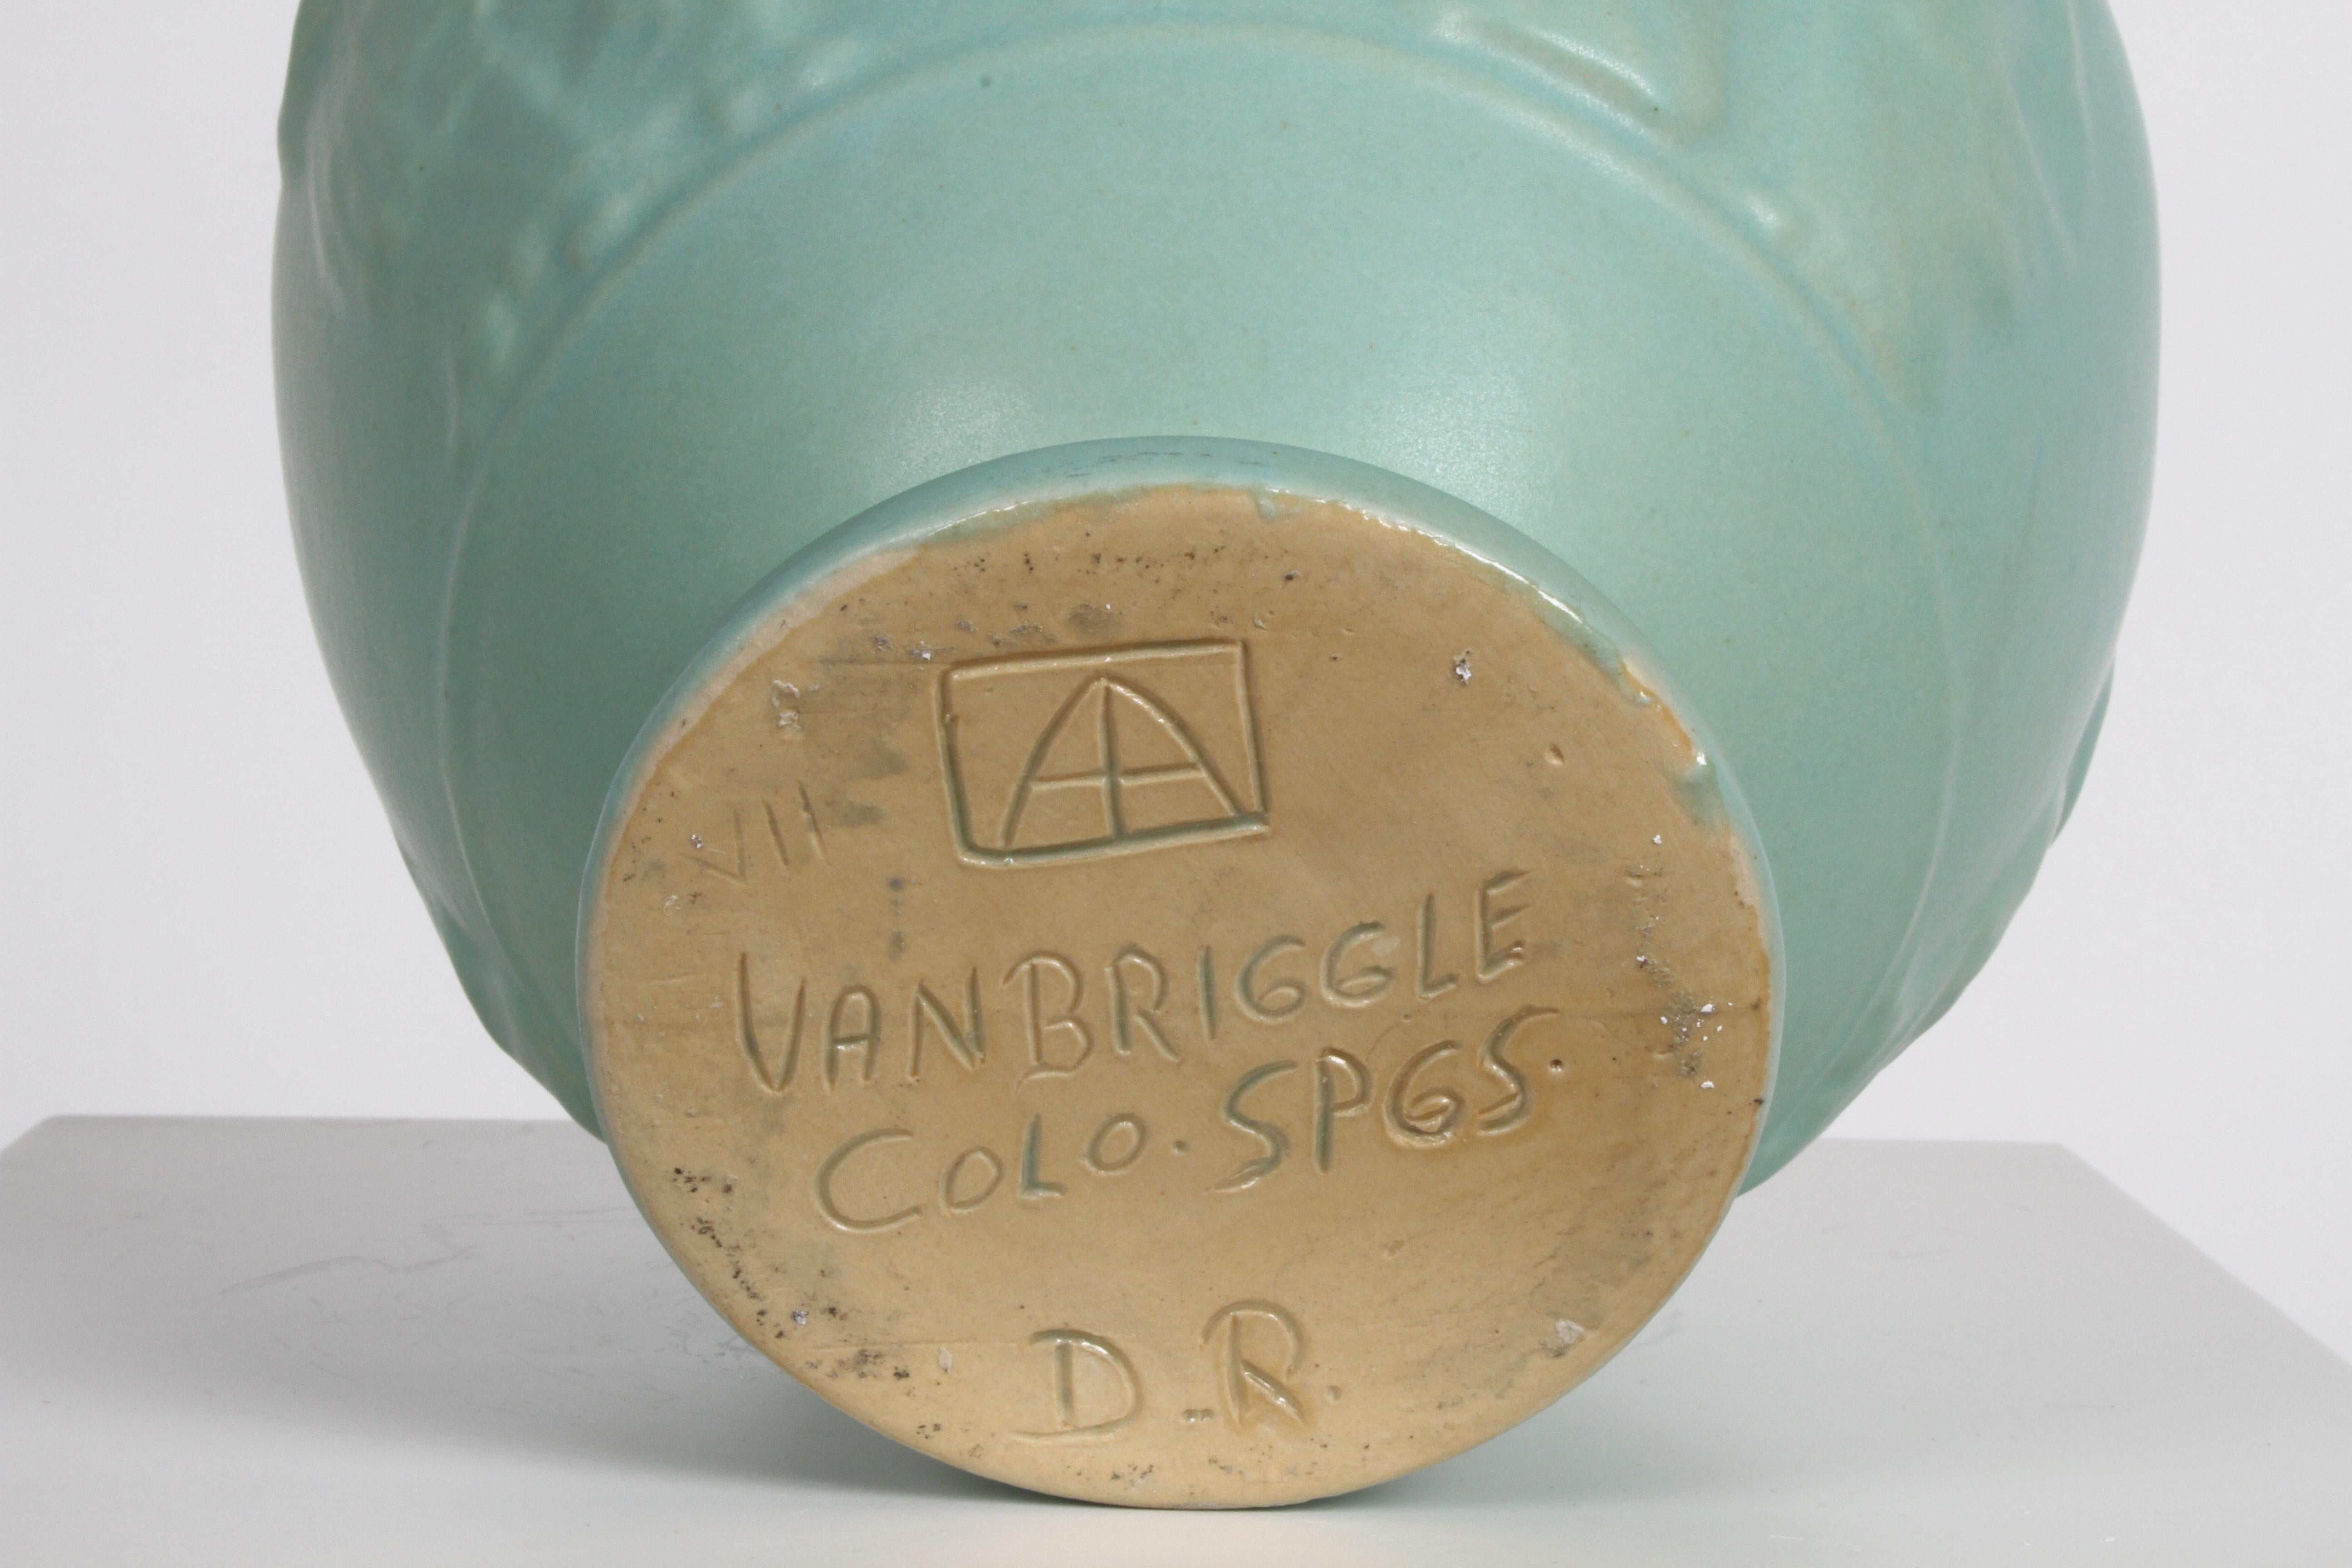 Van Briggle Turquoise Ming Glaze Grecian Urn or Vase Signed D.R. For Sale 4